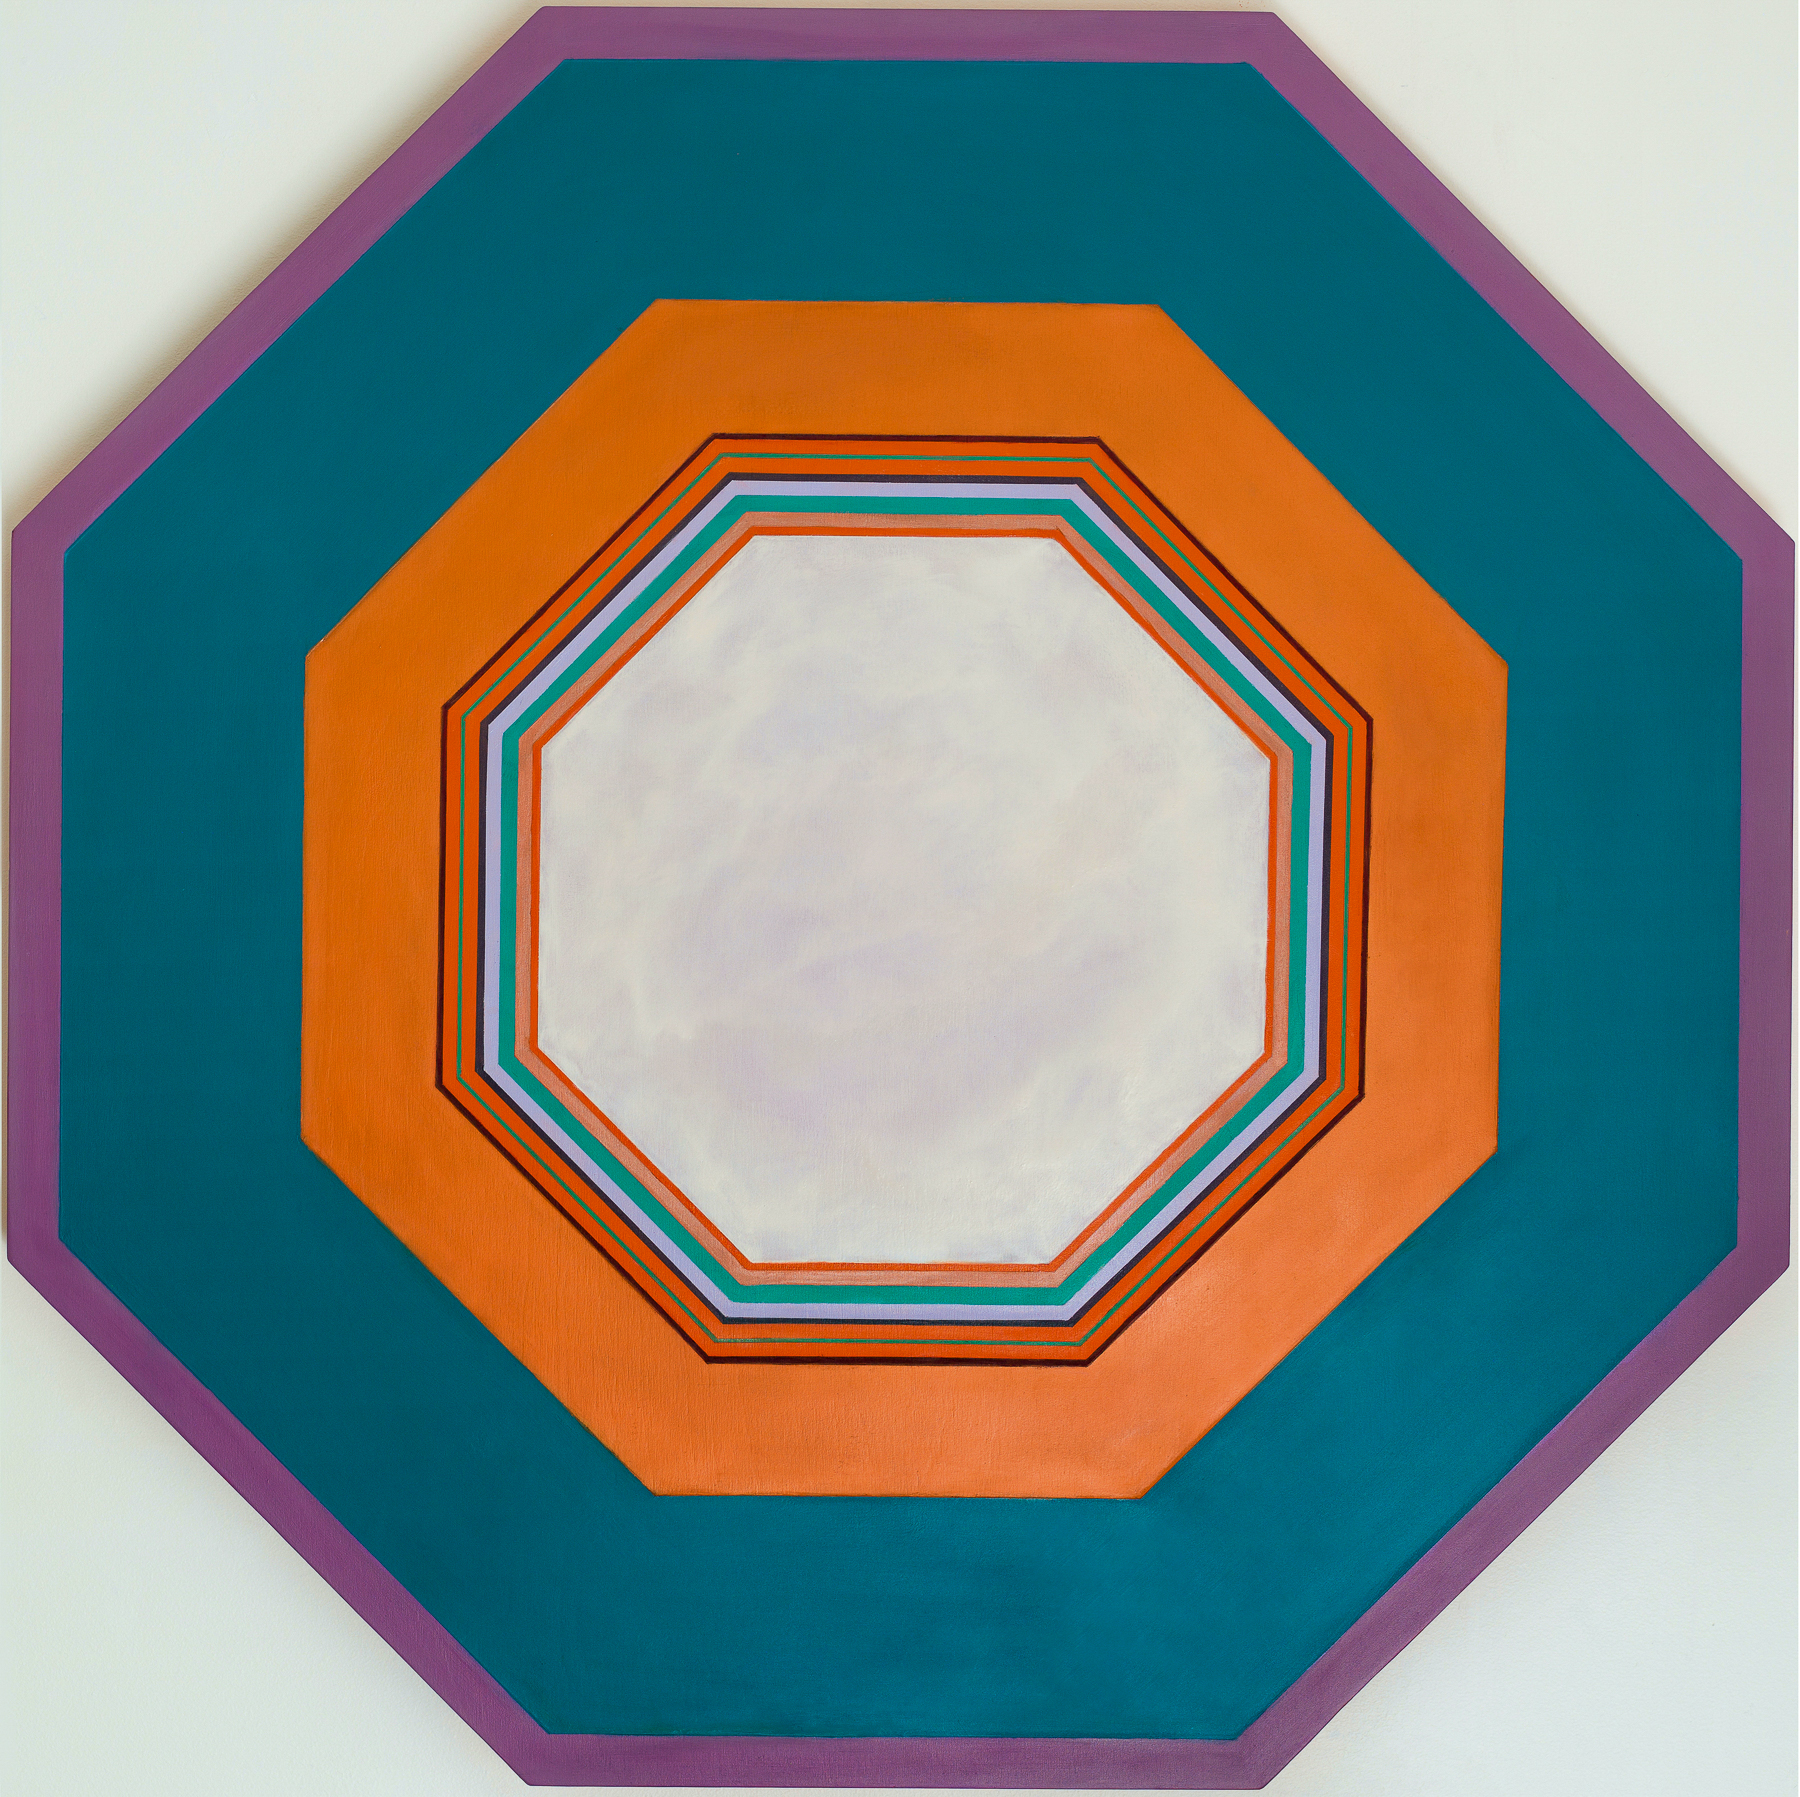 Octagon 1 by Anne Mestitz